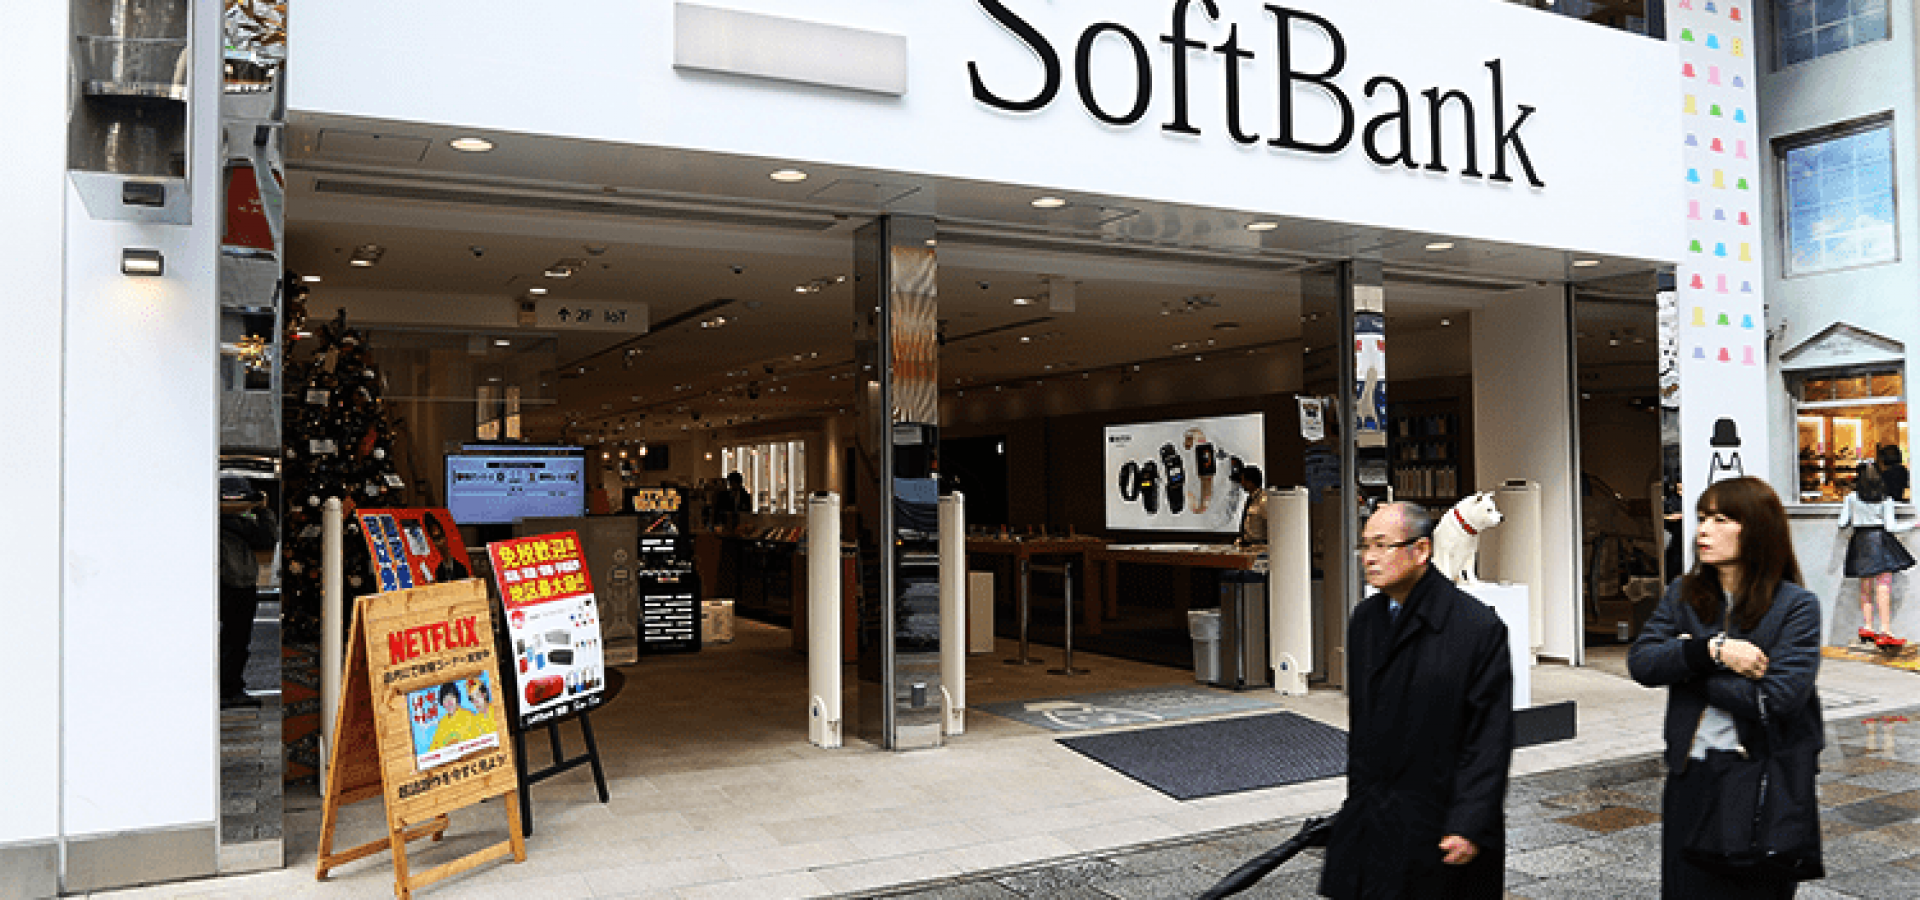 SoftBank and Arm